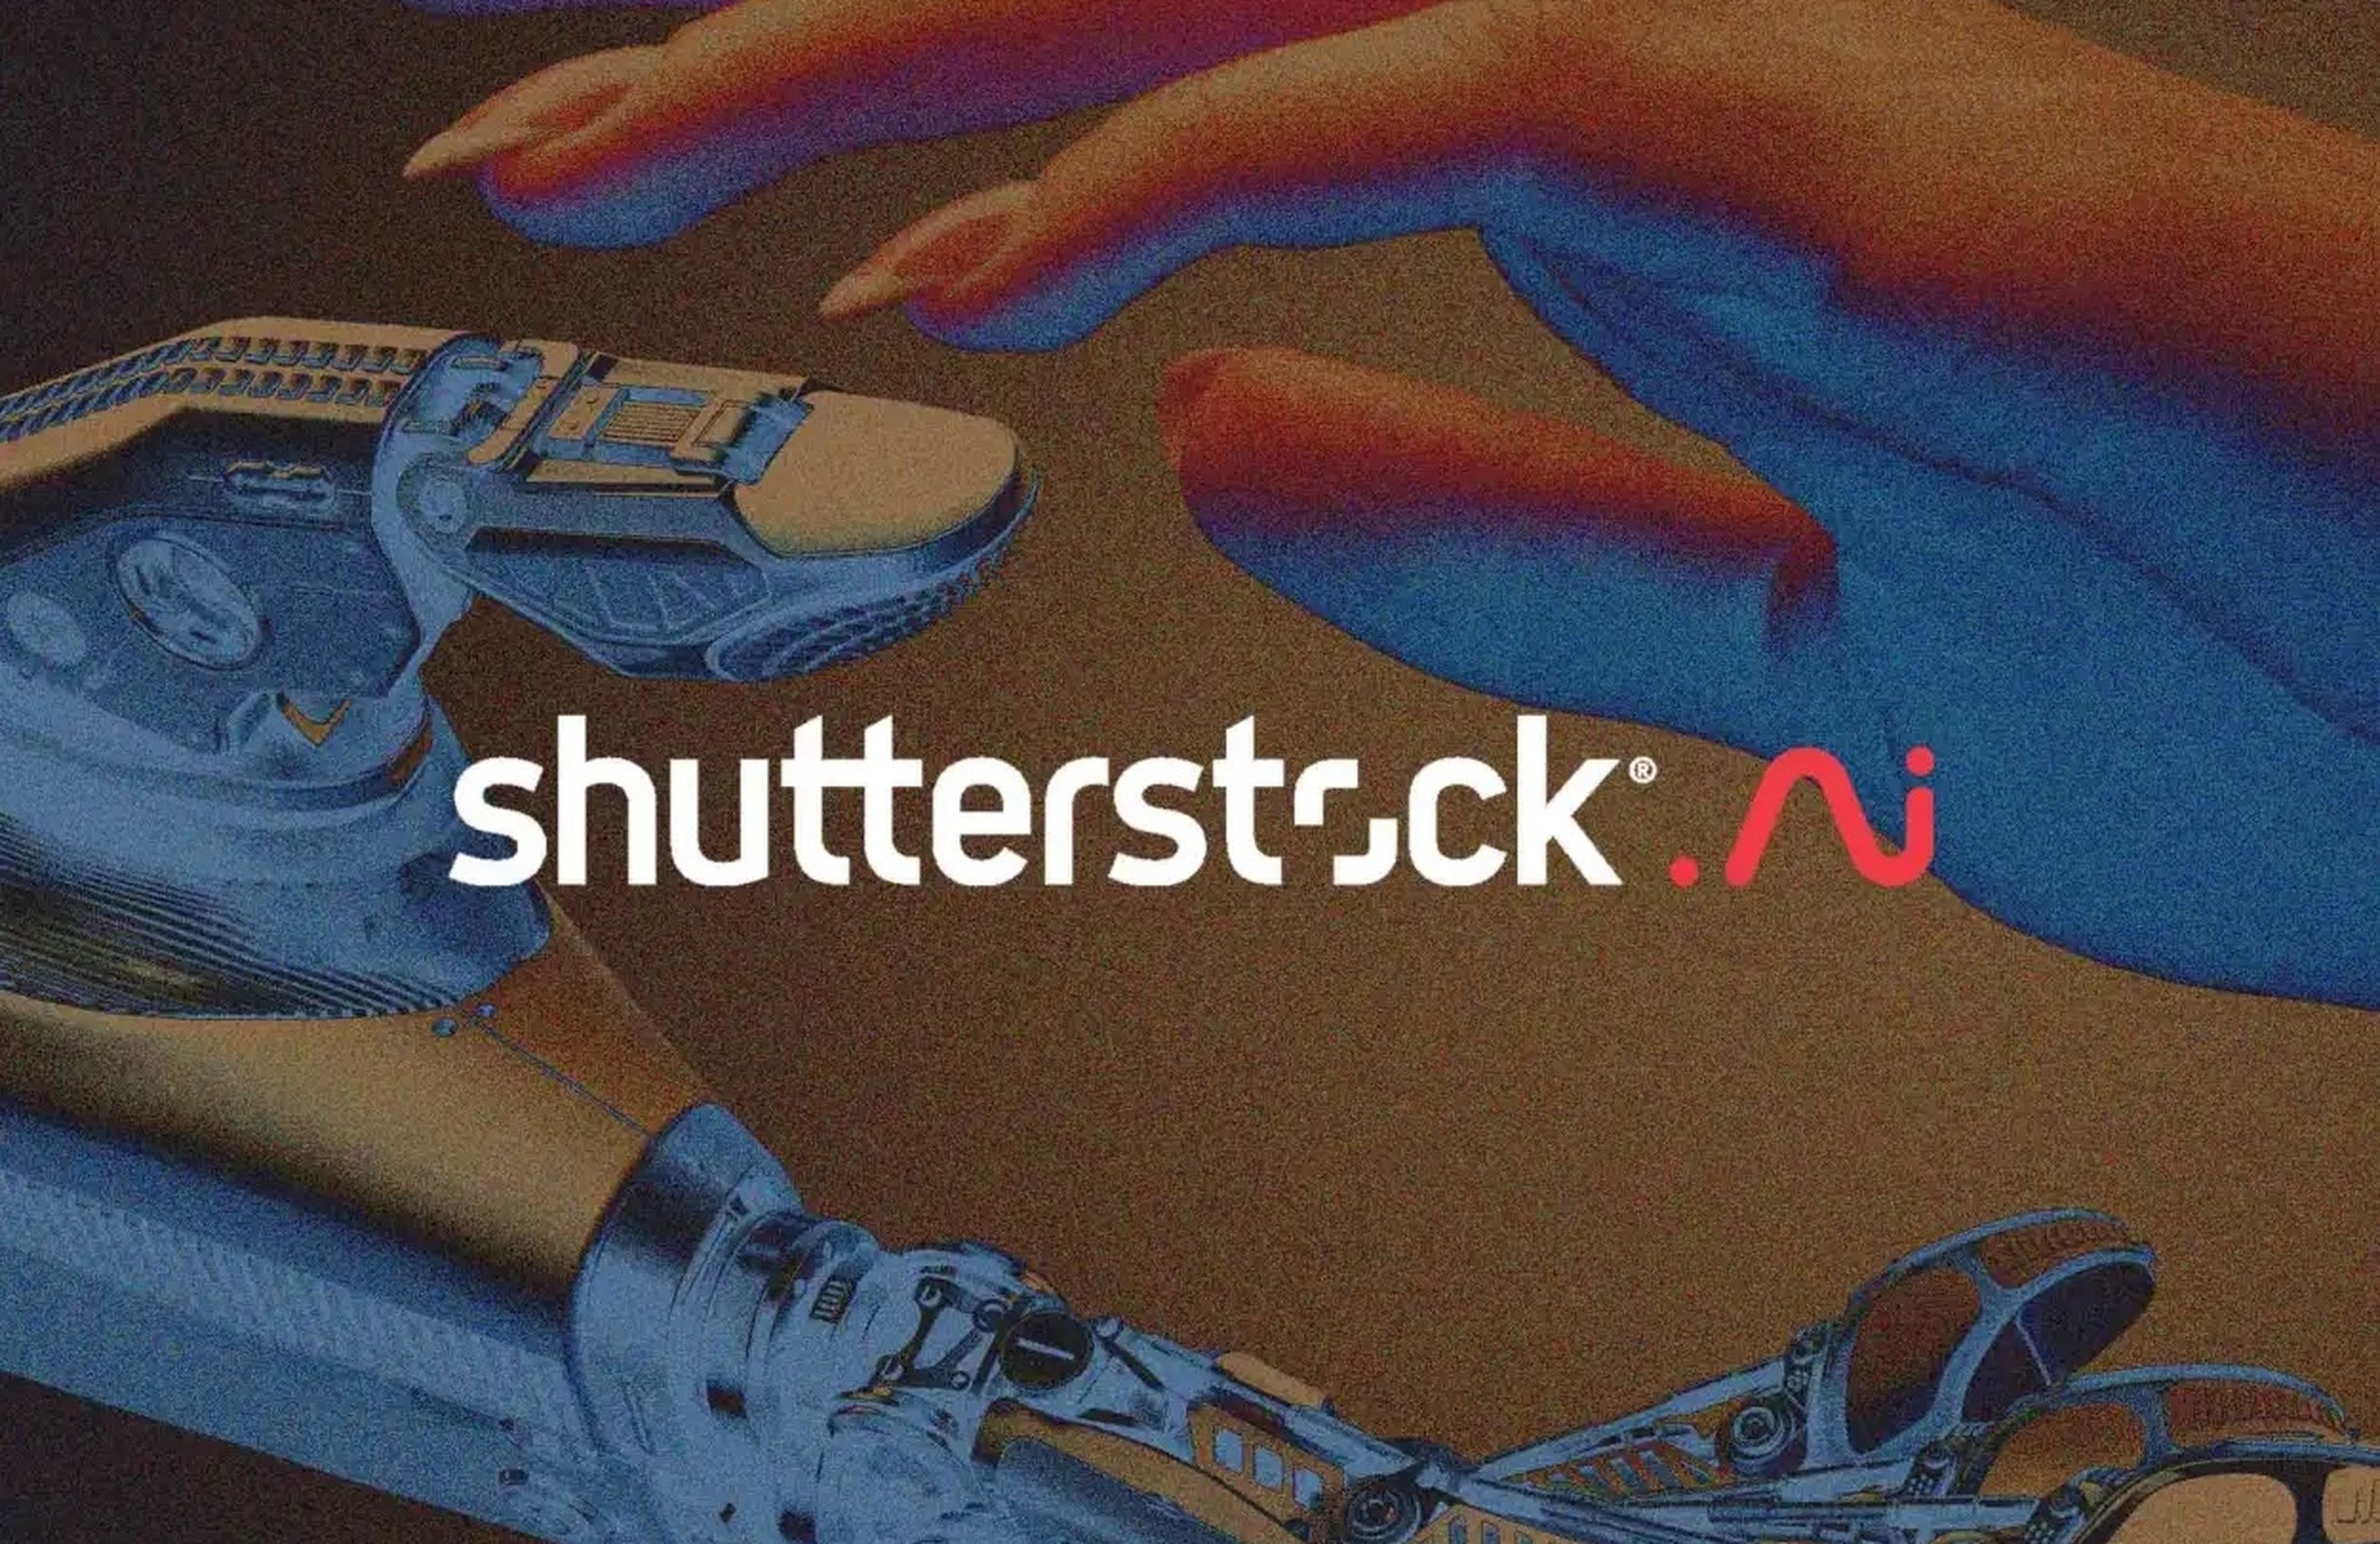 Si no puedes con tu enemigo, únete al él: Shutterstock presenta su IA basada en DALL-E para crear imágenes, y ya puedes probarla